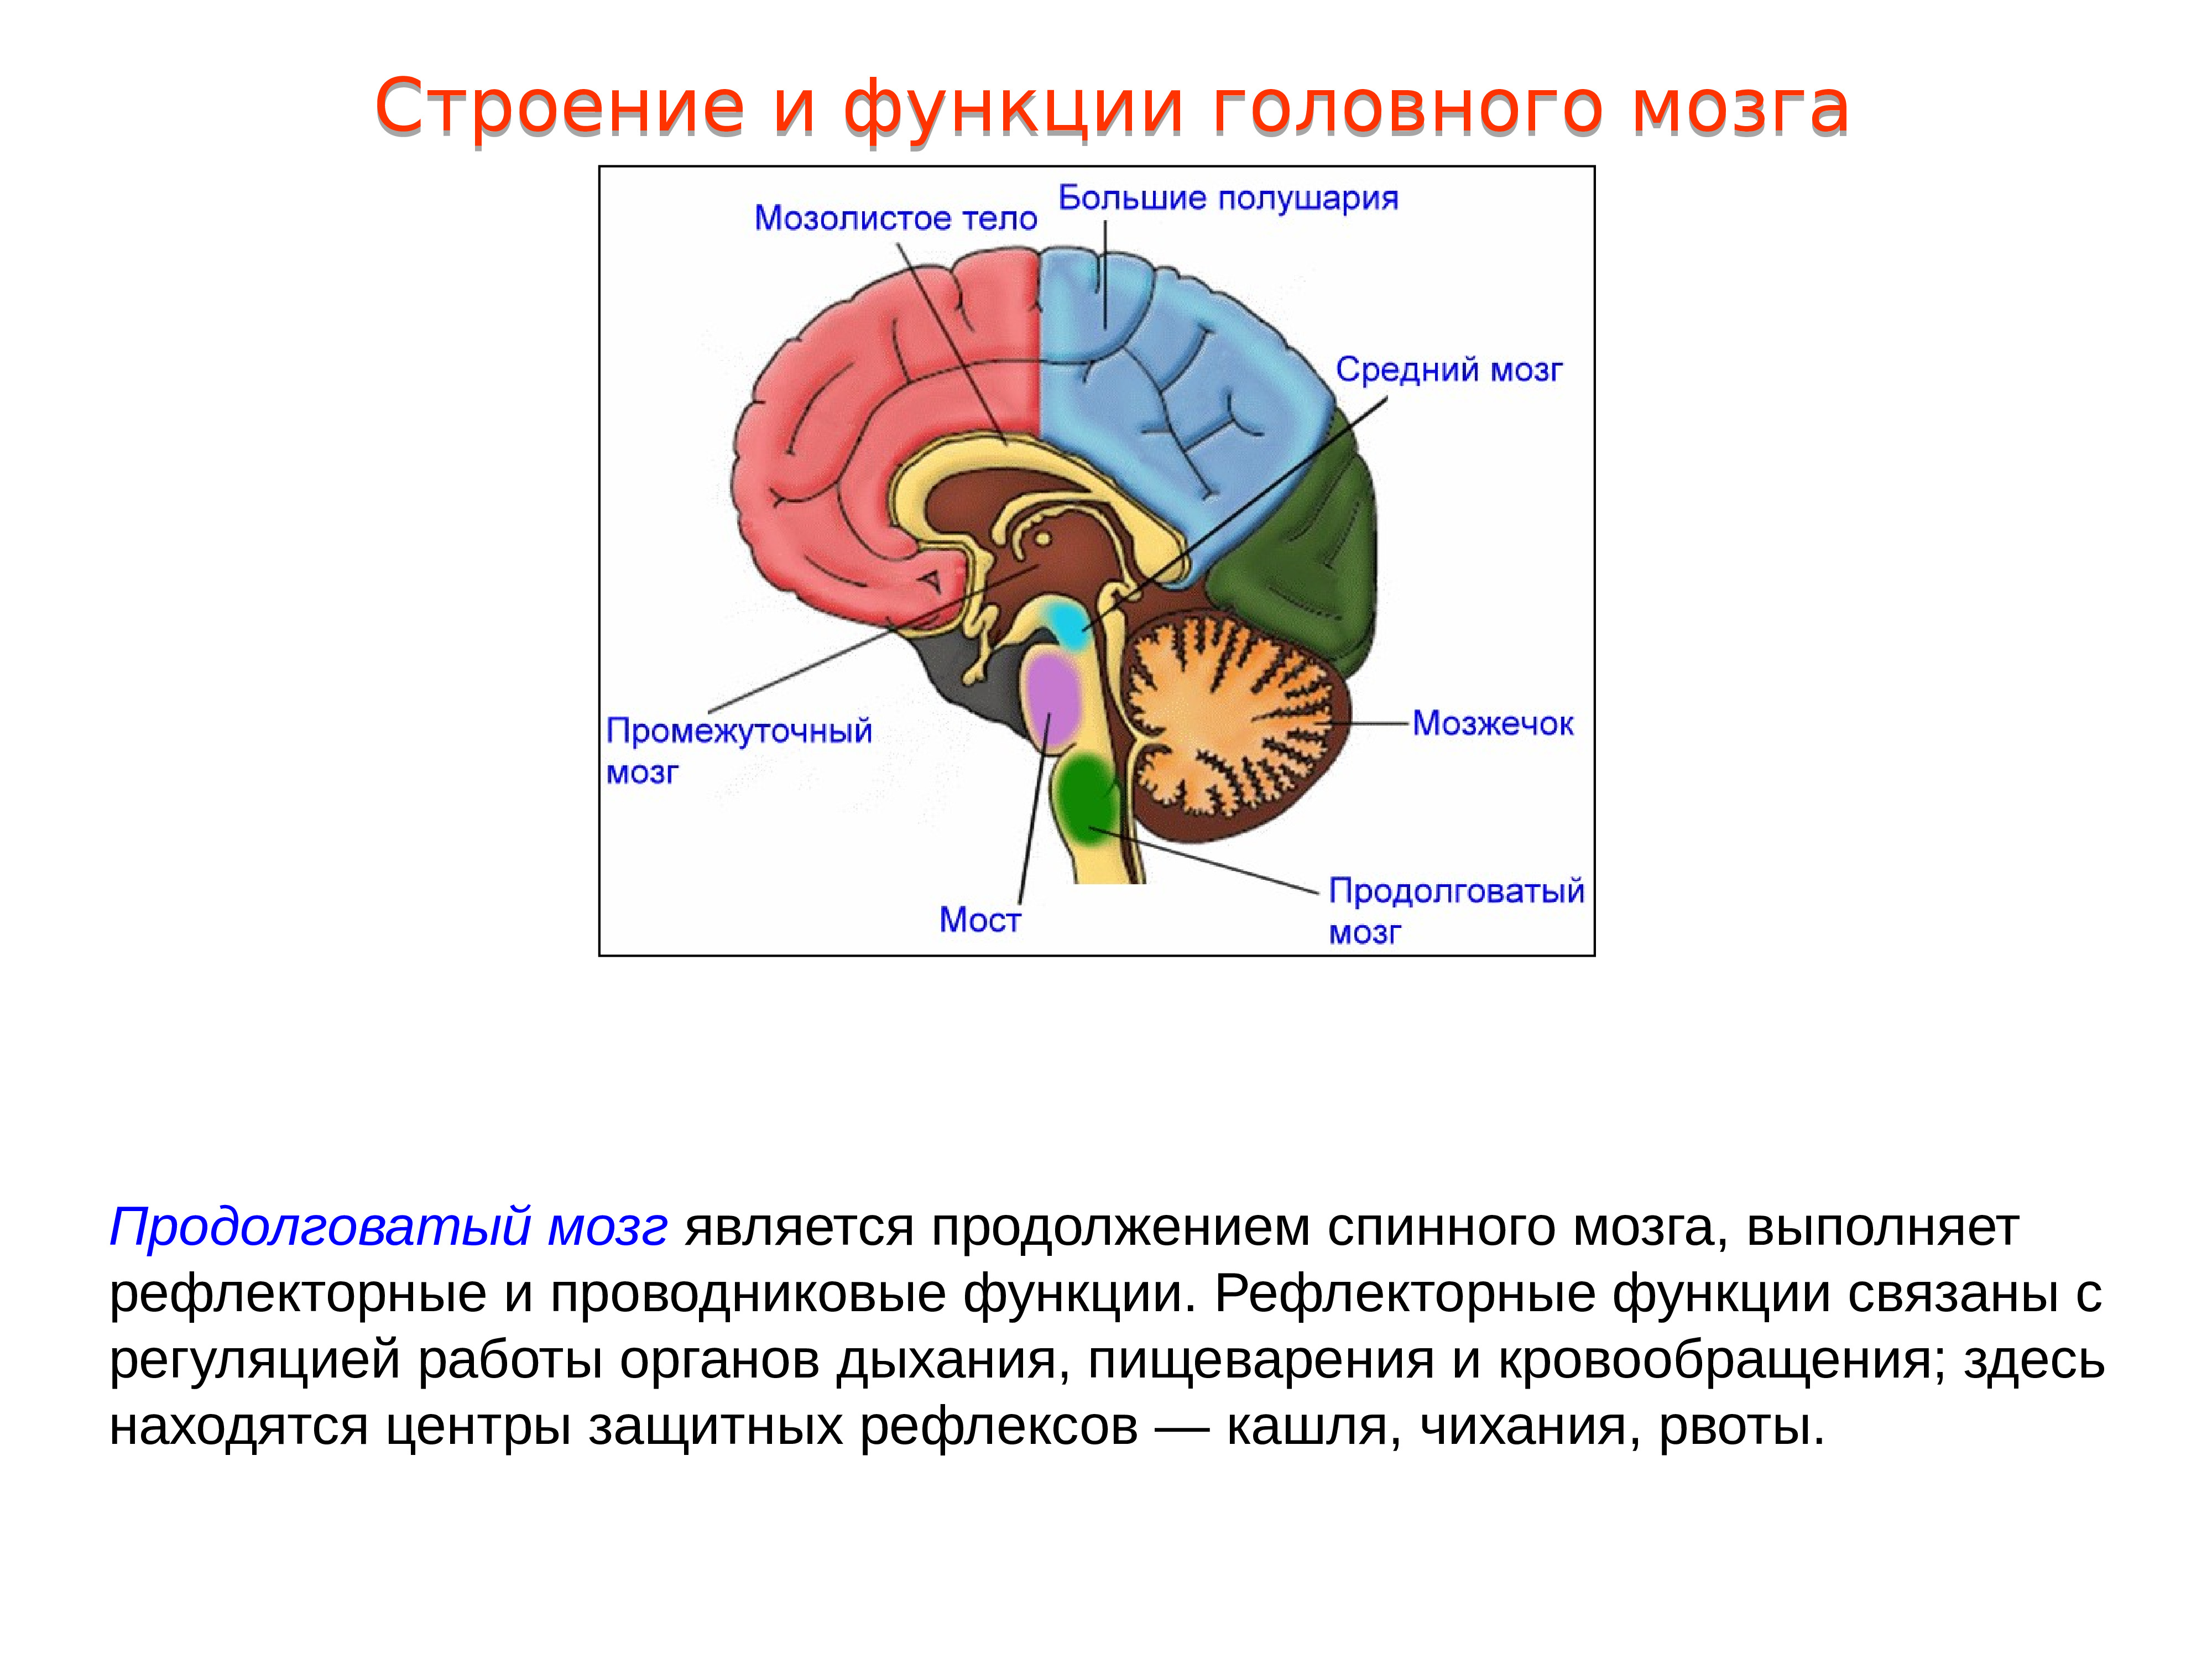 Структуры и функции отделов головного мозга. Структура головного мозг задний мозг. Проводниковая функция мозжечка. Головной мозг, отделы. Строение и функции продолговатого мозга. 1. Промежуточный мозг: строение, функции.